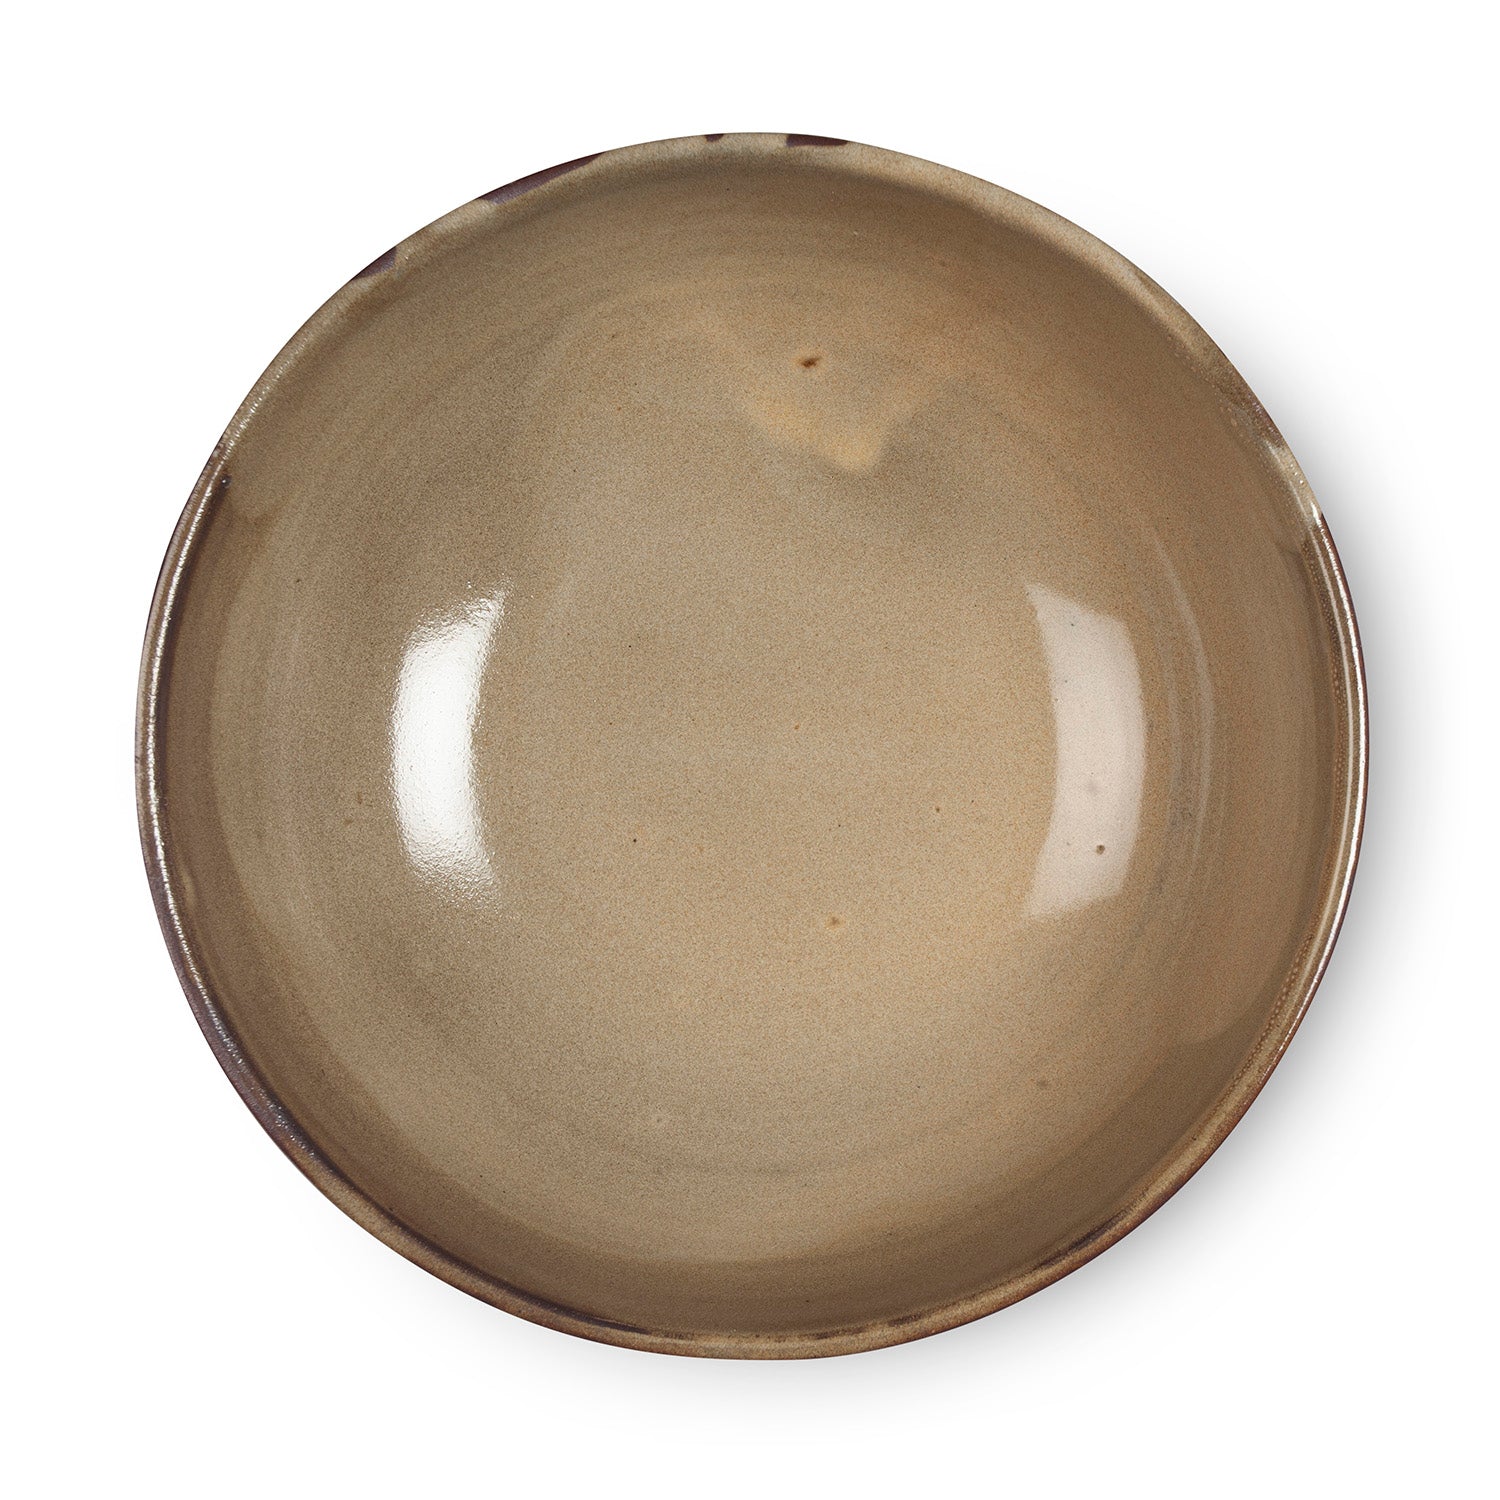 Glazed Terracotta Bowl - 8.5"